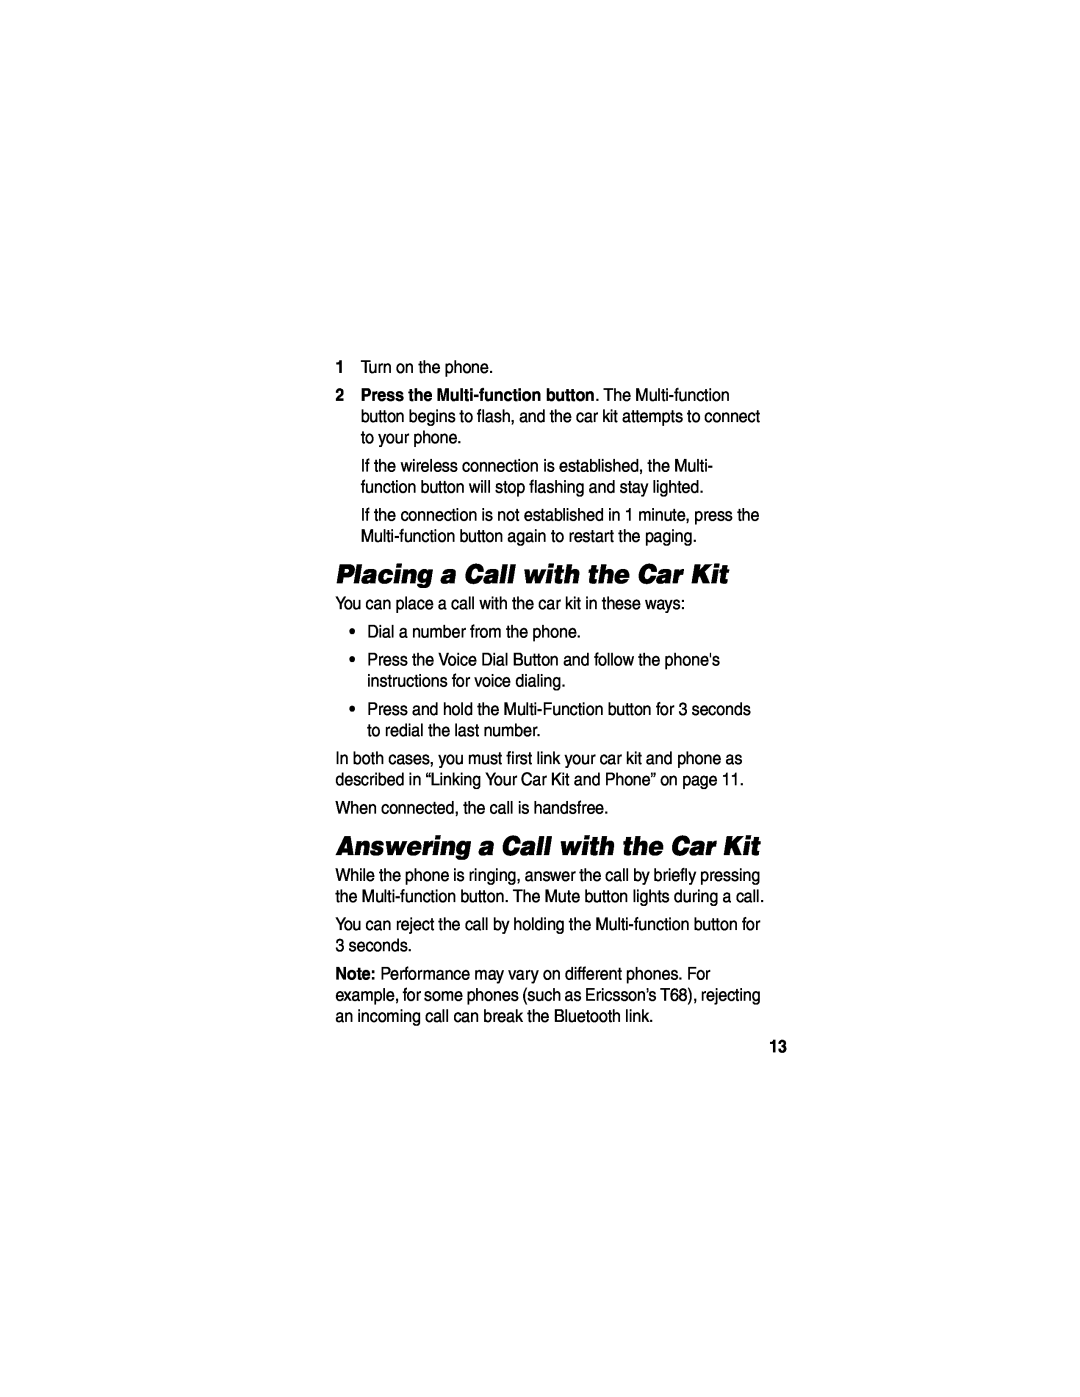 Motorola HF850 manual Placing a Call with the Car Kit, Answering a Call with the Car Kit 